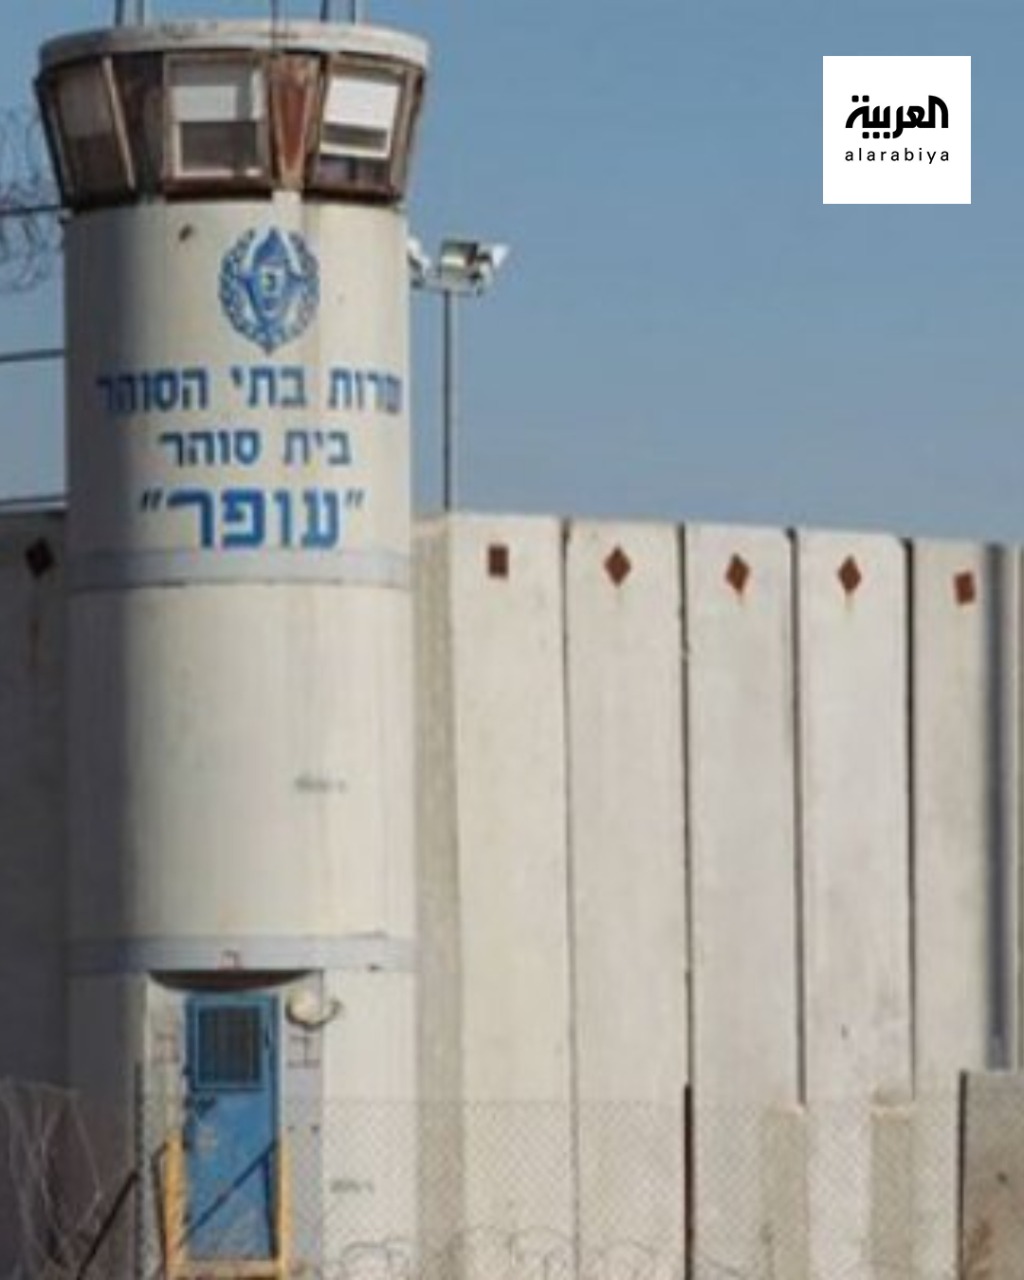 هروب ستة أسرى فلسطينيين من داخل سجن "جلبوع" الإسرائيلي، بعد حفرهم نفقا من داخل إحدى الزنازين #فلسطين E-lSgpBWYAQJMxt?format=jpg&name=large